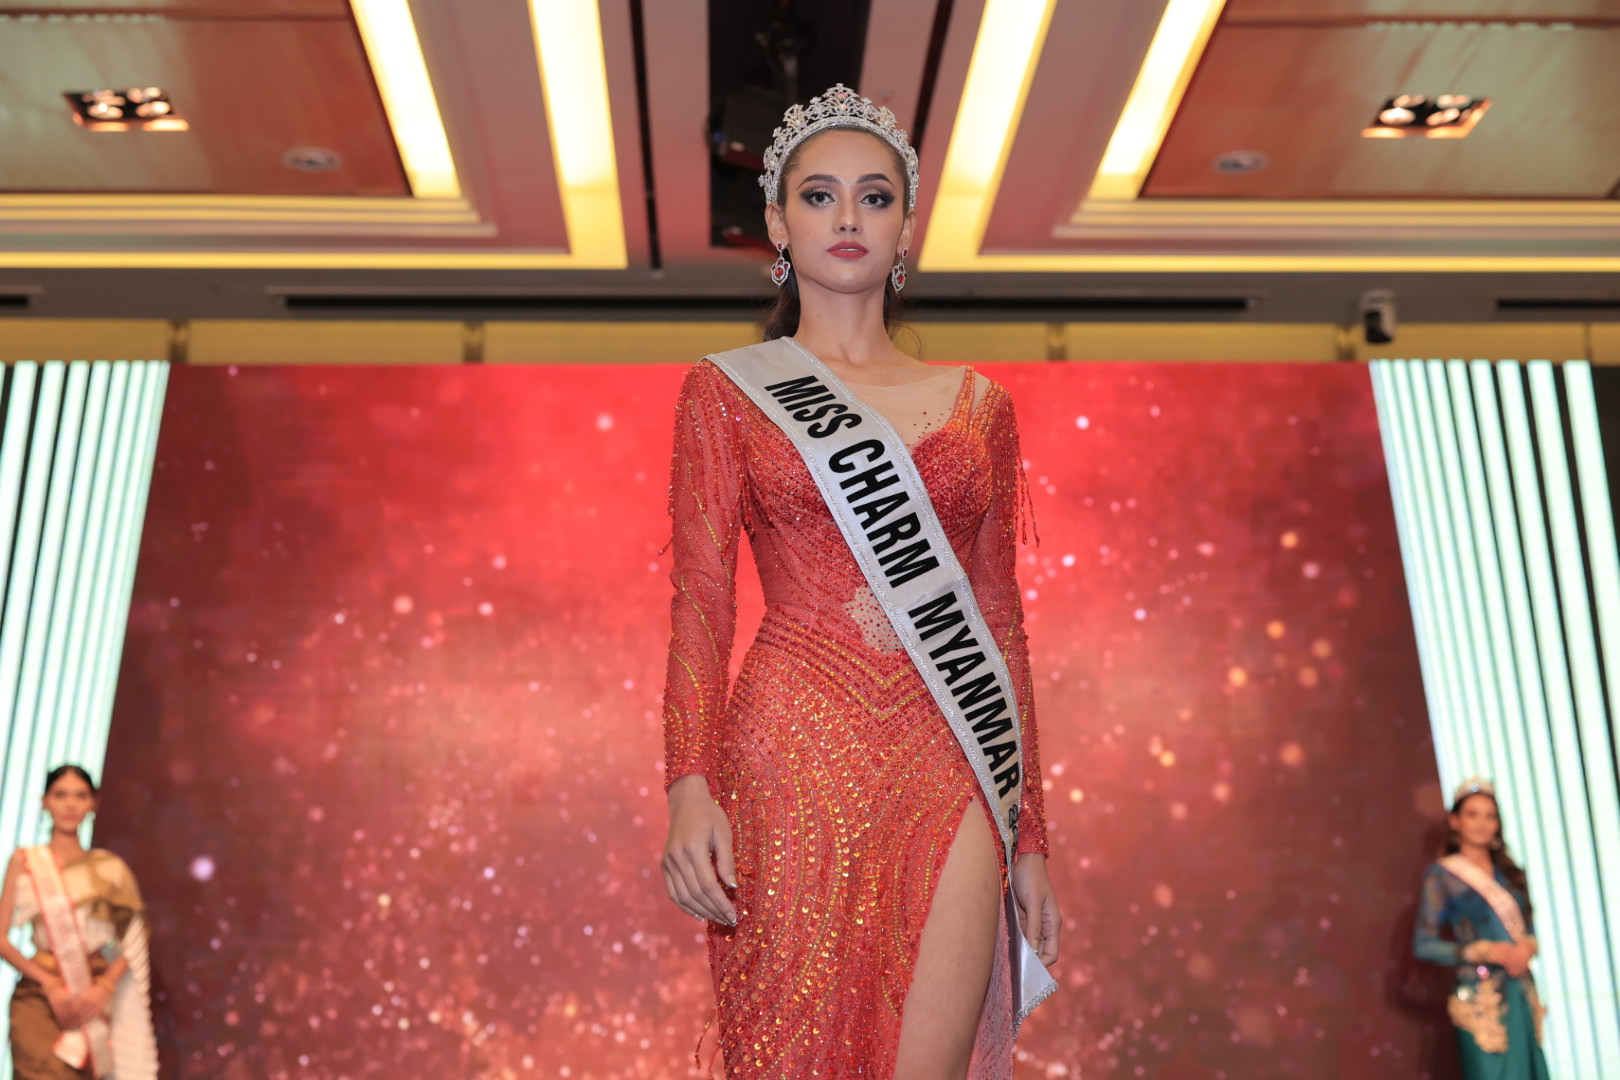 Hoa hậu Miss Charm nhận giải thưởng gần 2,5 tỉ đồng - Ảnh 6.